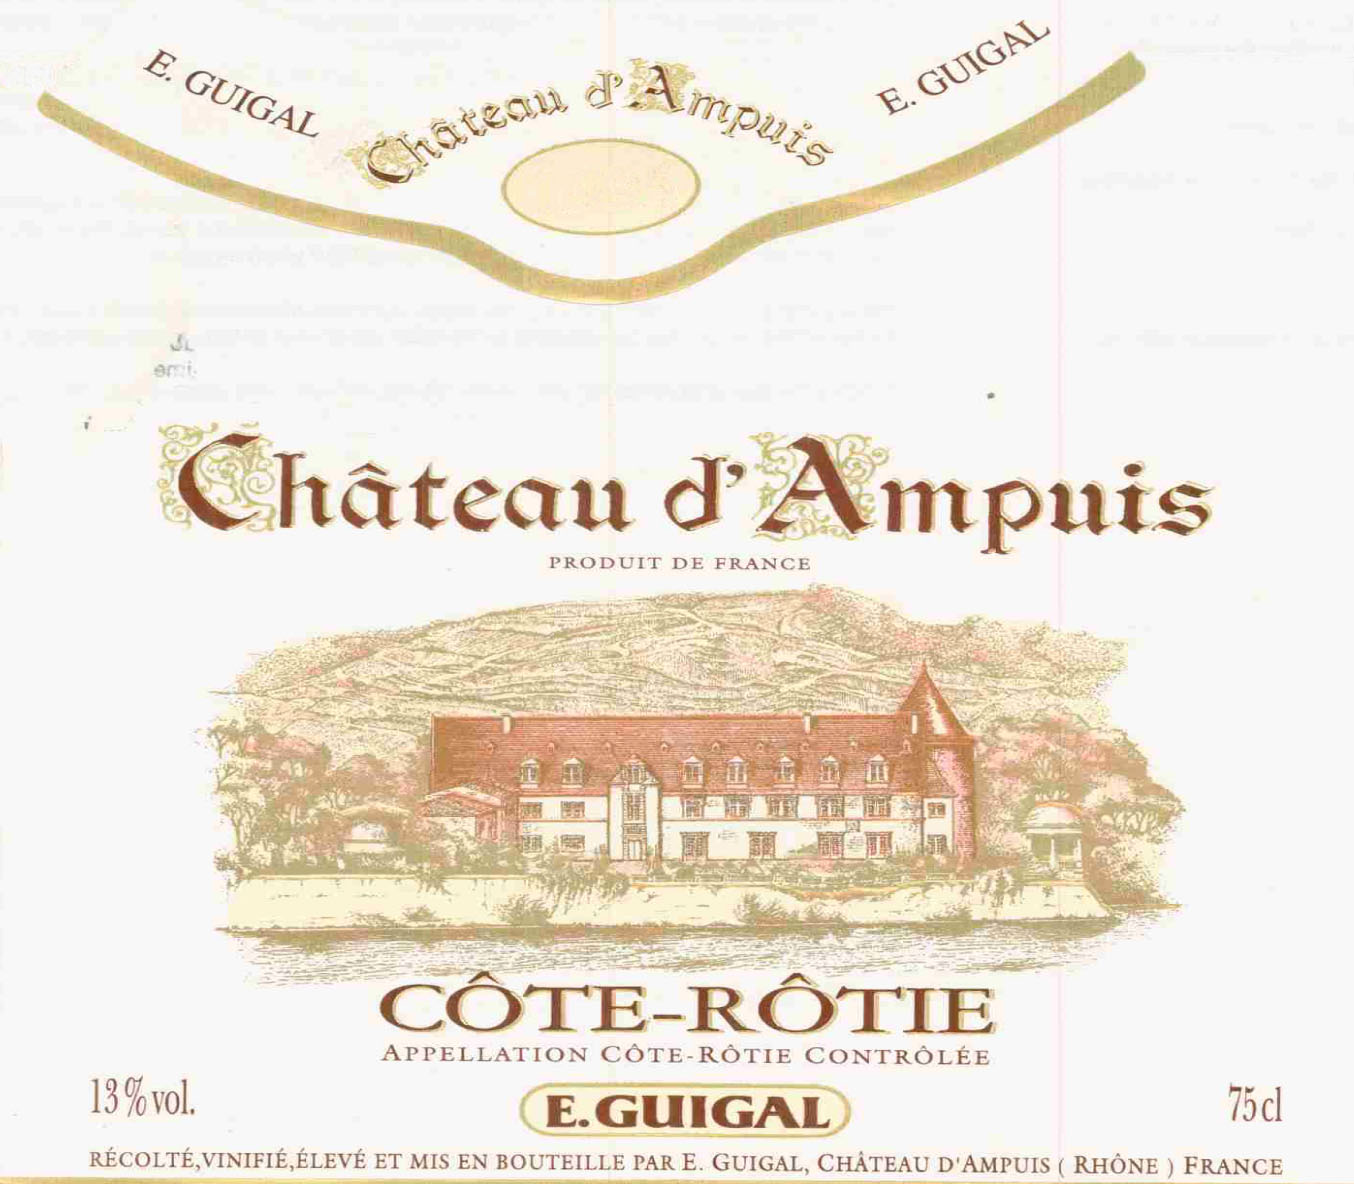 E. Guigal - Chateau d'Ampuis label